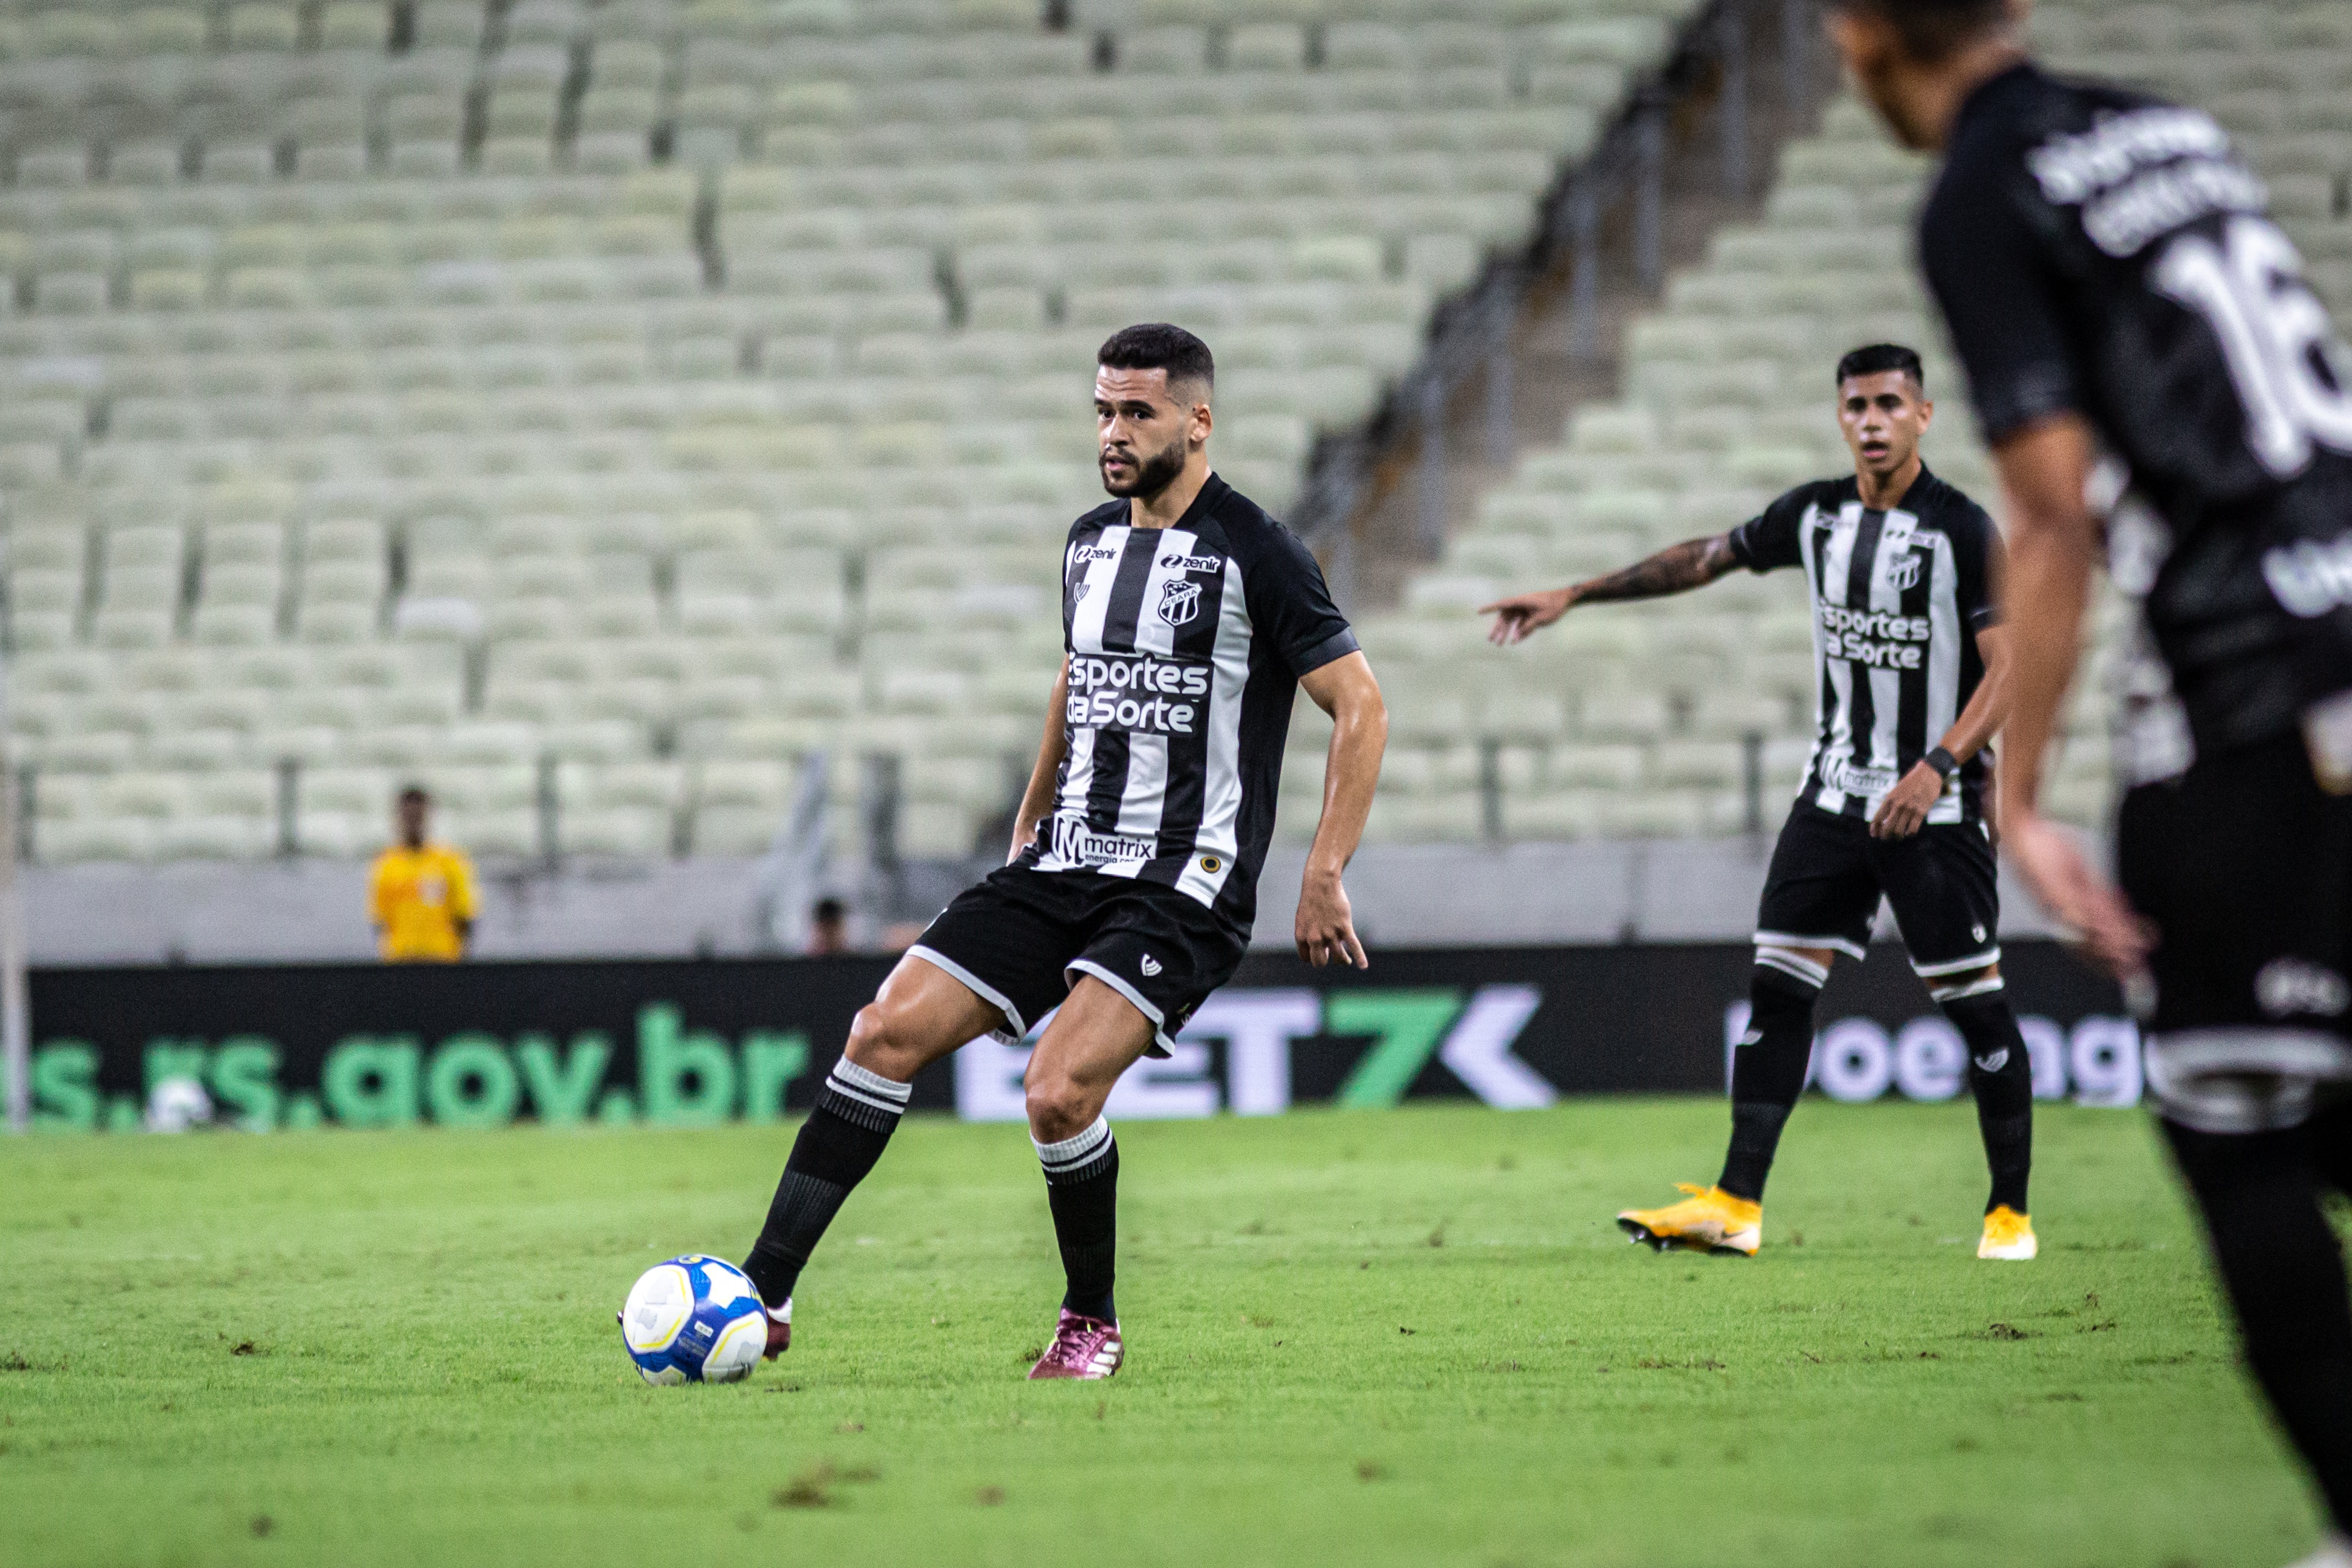 Na Arena Castelão, Ceará recebe o Botafogo/SP pela décima rodada do Campeonato Brasileiro